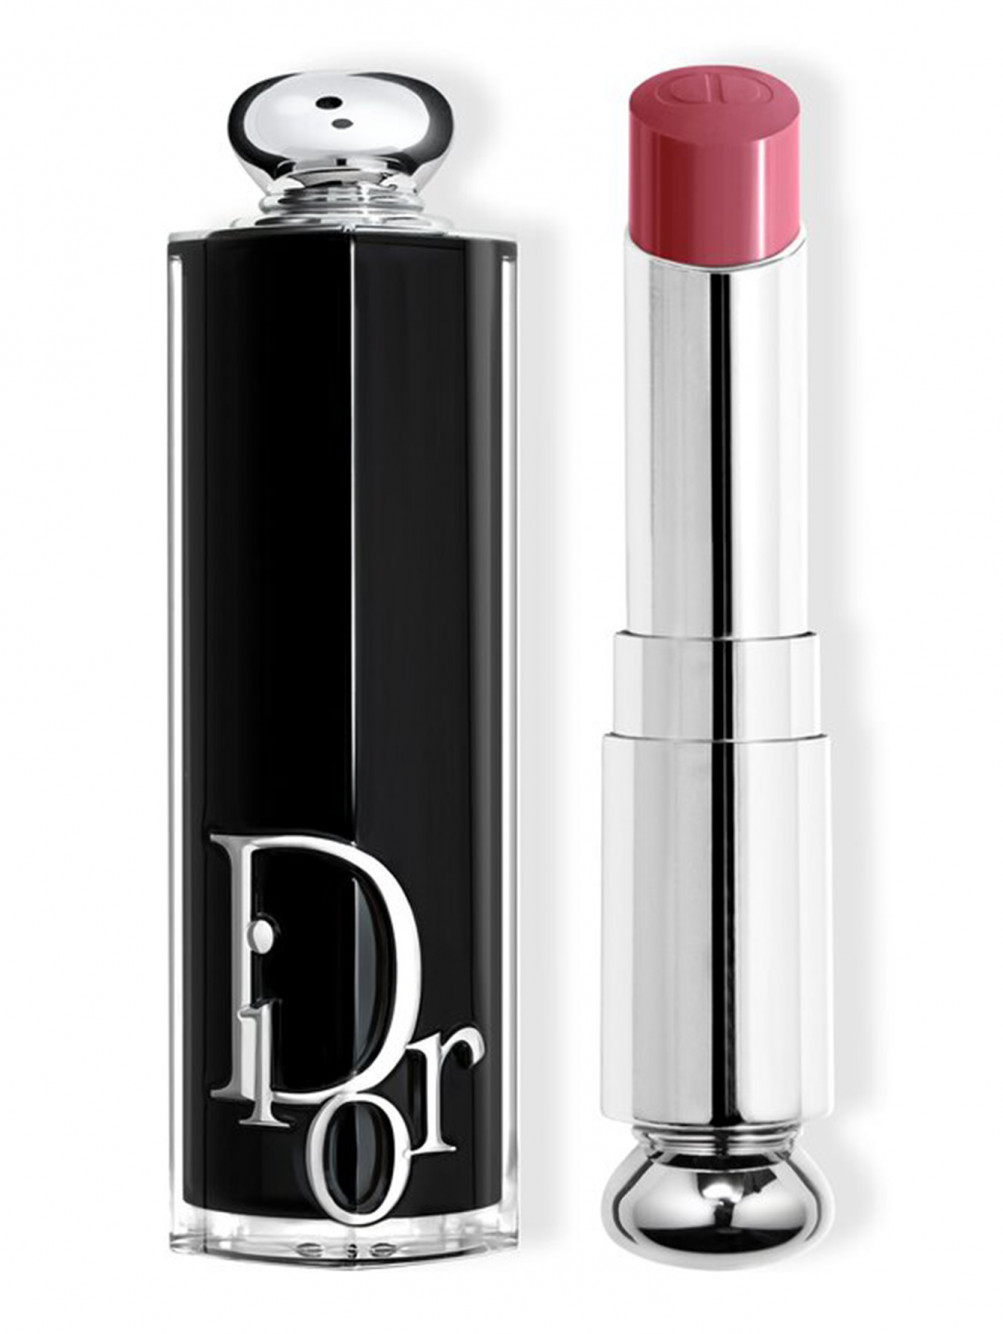 Помада для губ Dior Addict, 652 Роза Диор, 3,2 г - Общий вид